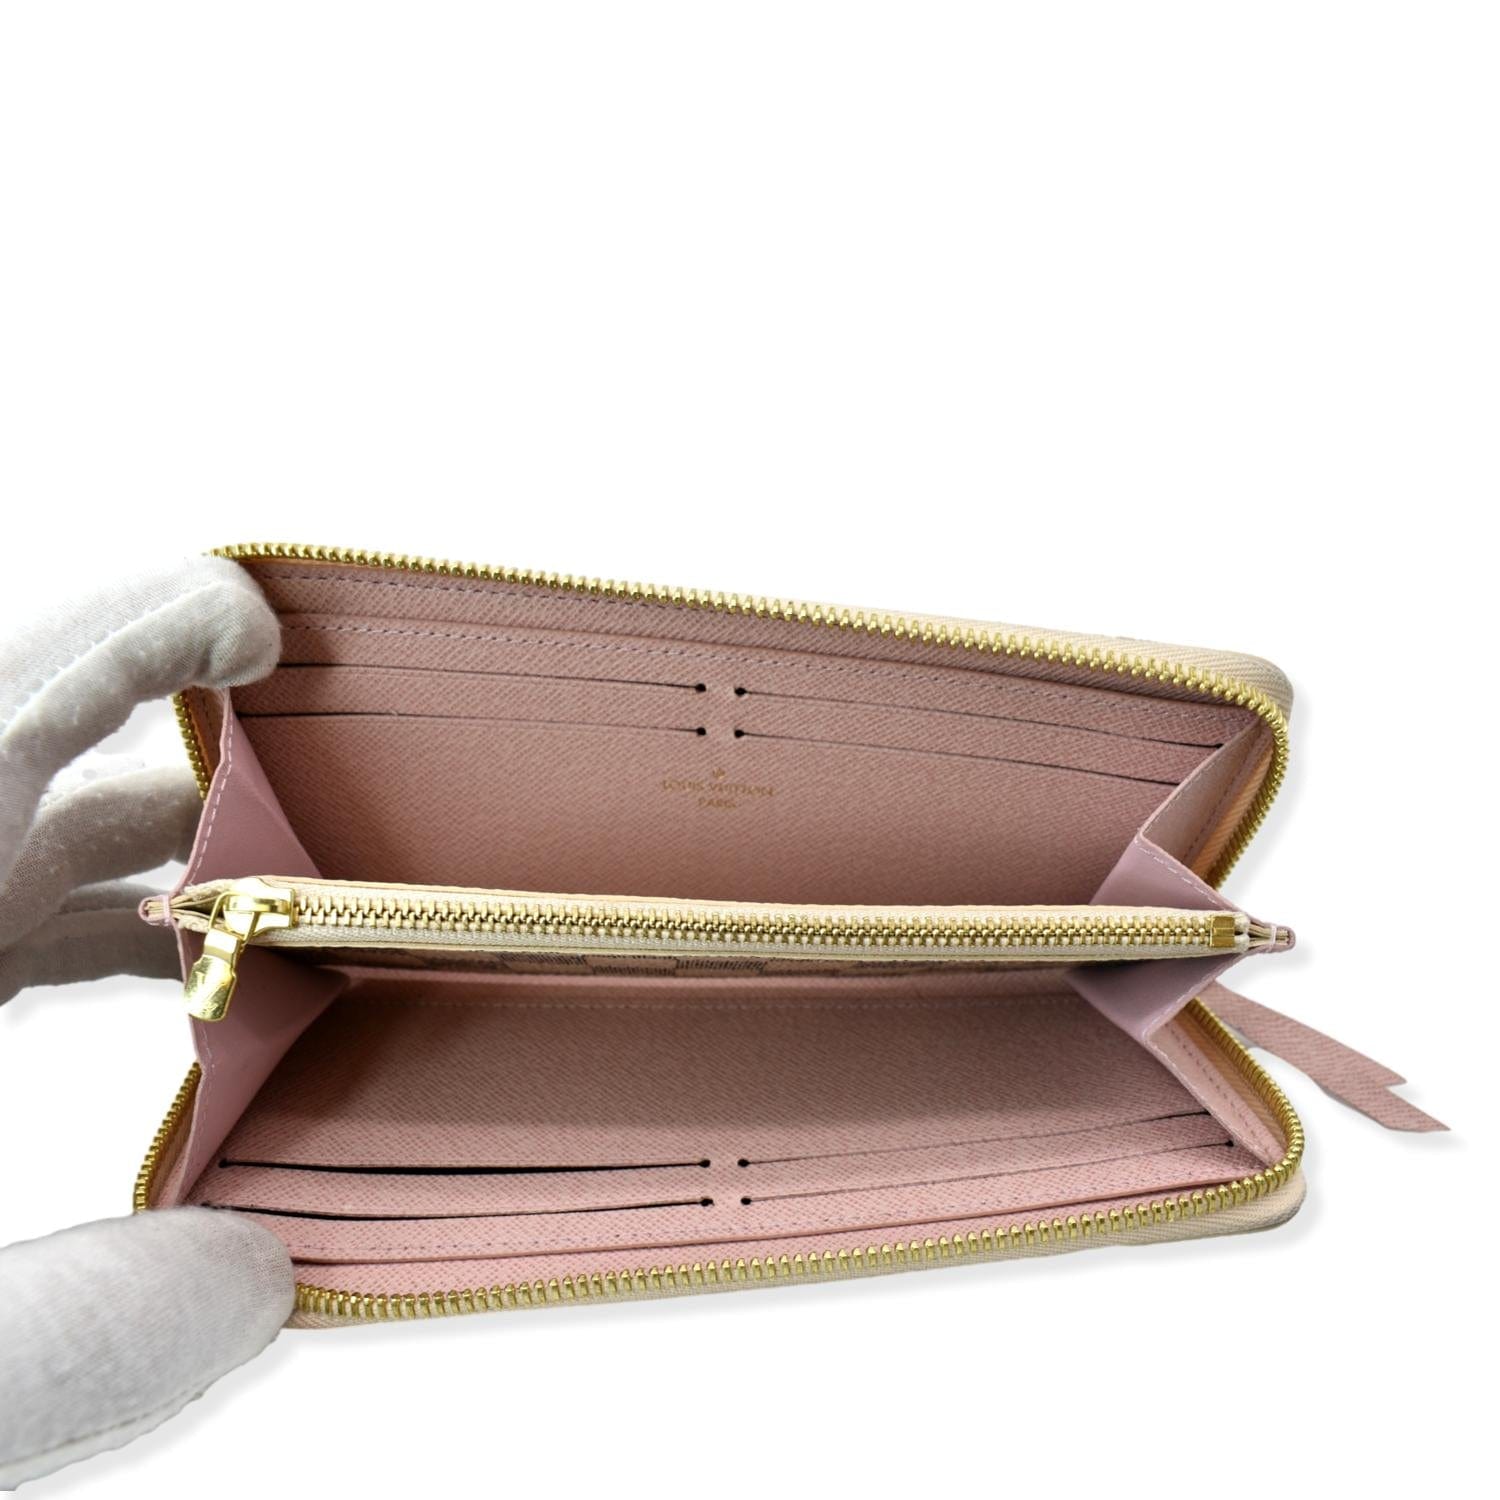 Louis Vuitton Damier Azur Zippy Wallet Rose Ballerine Pink